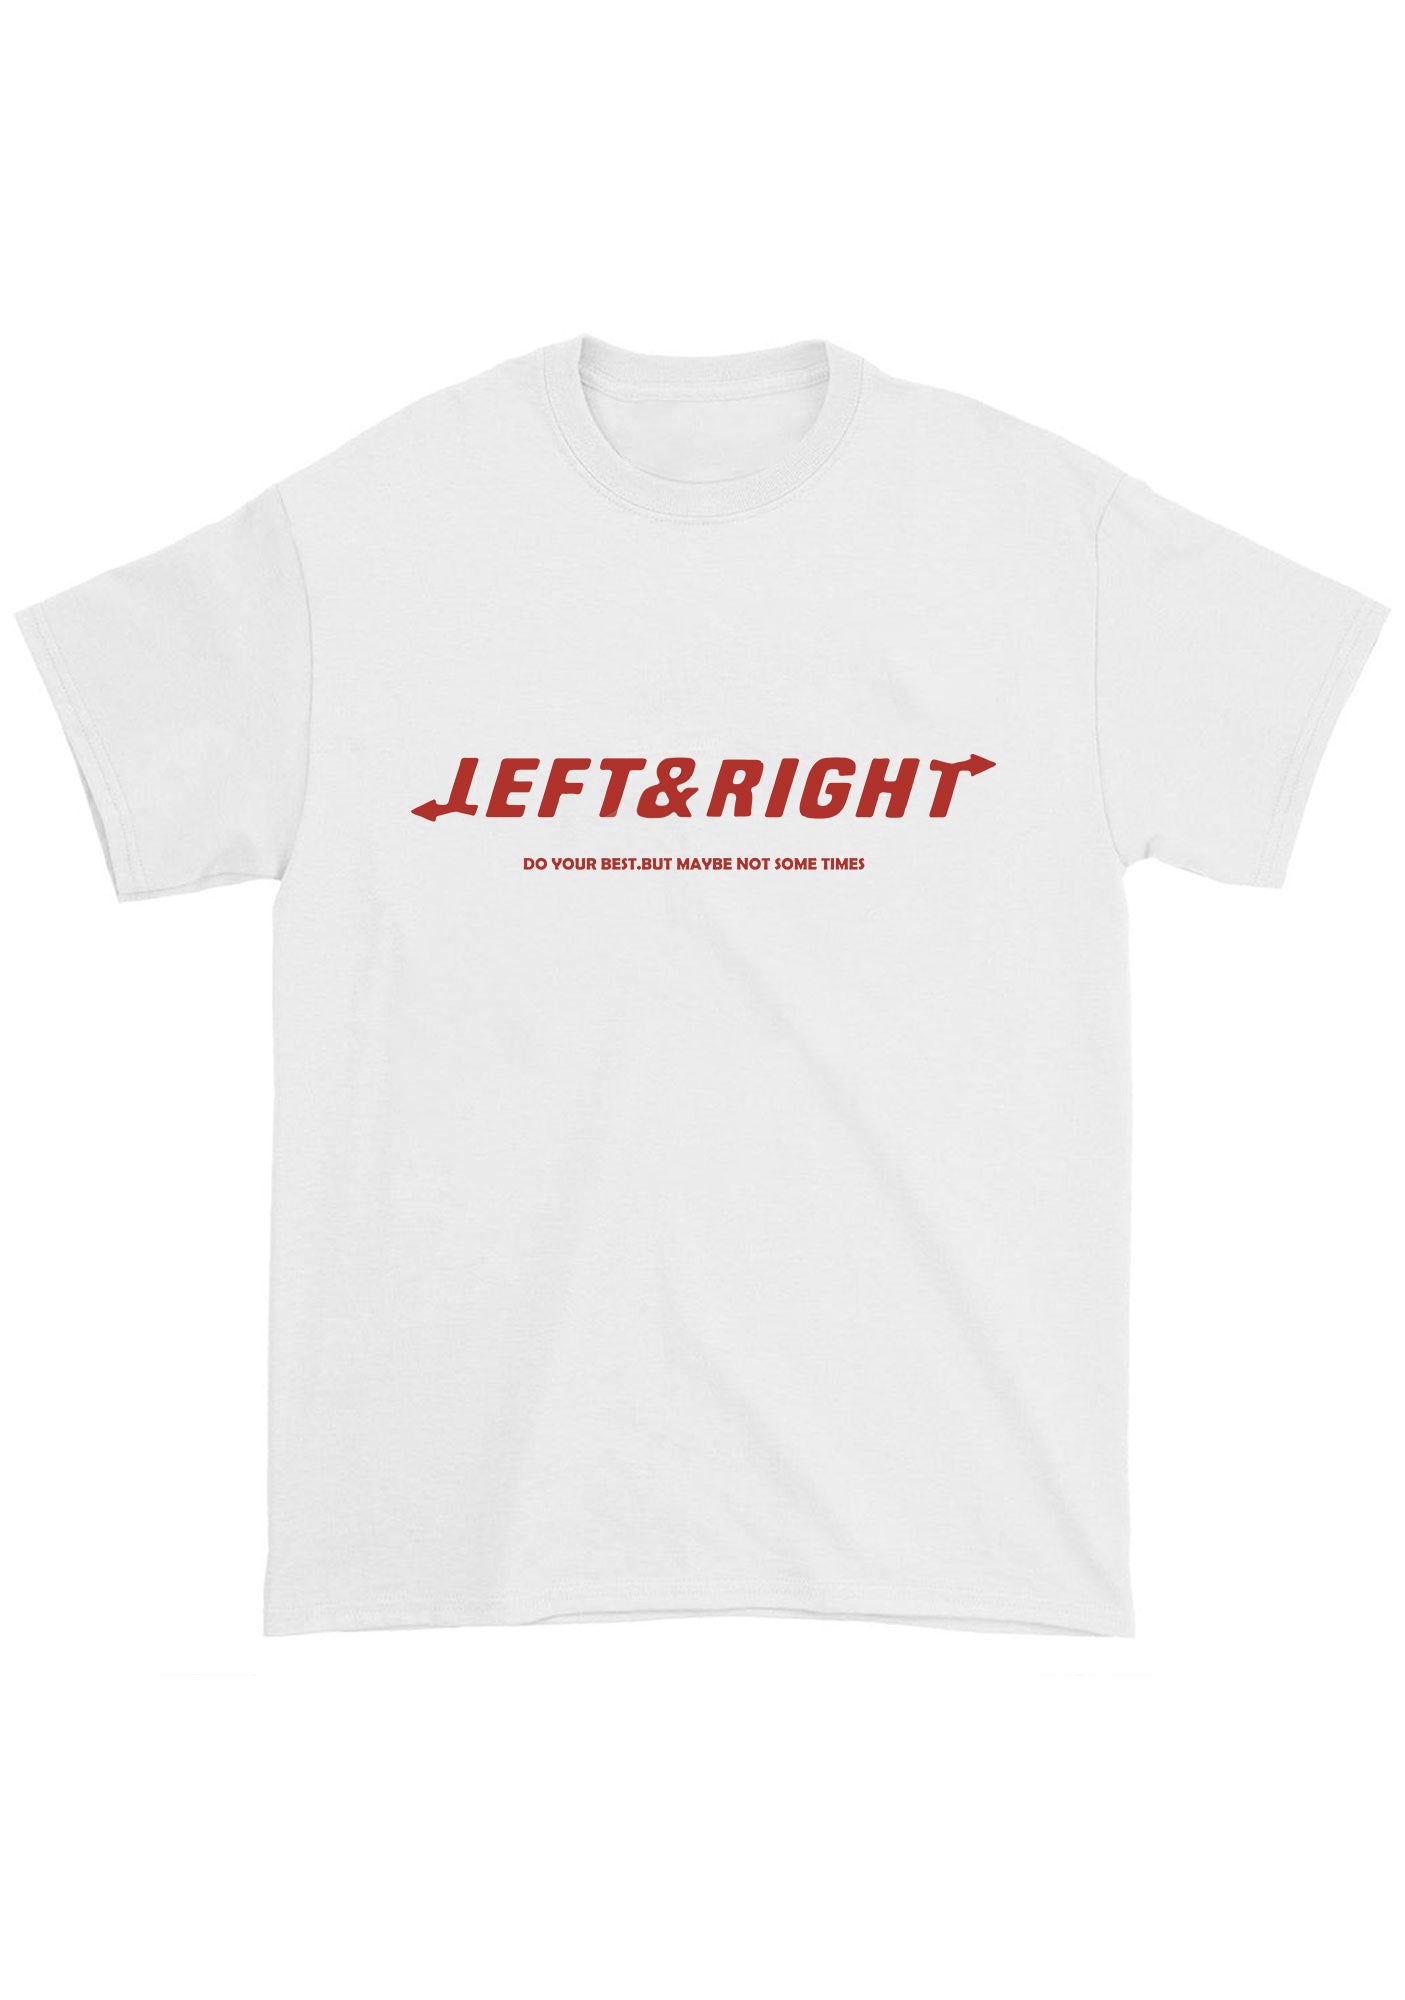 Left&Right Arrows Svt Kpop Chunky Shirt